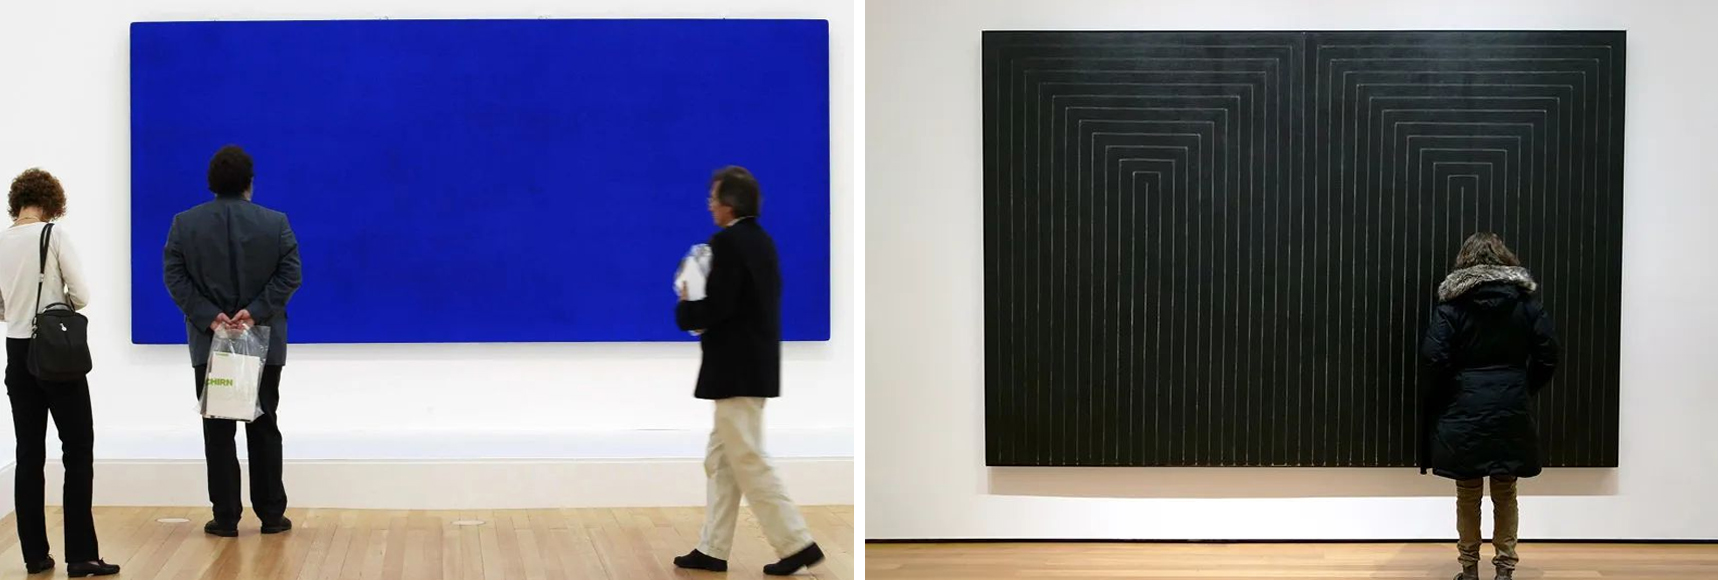 克莱因蓝和其背后的极限艺术详细图-5.jpg